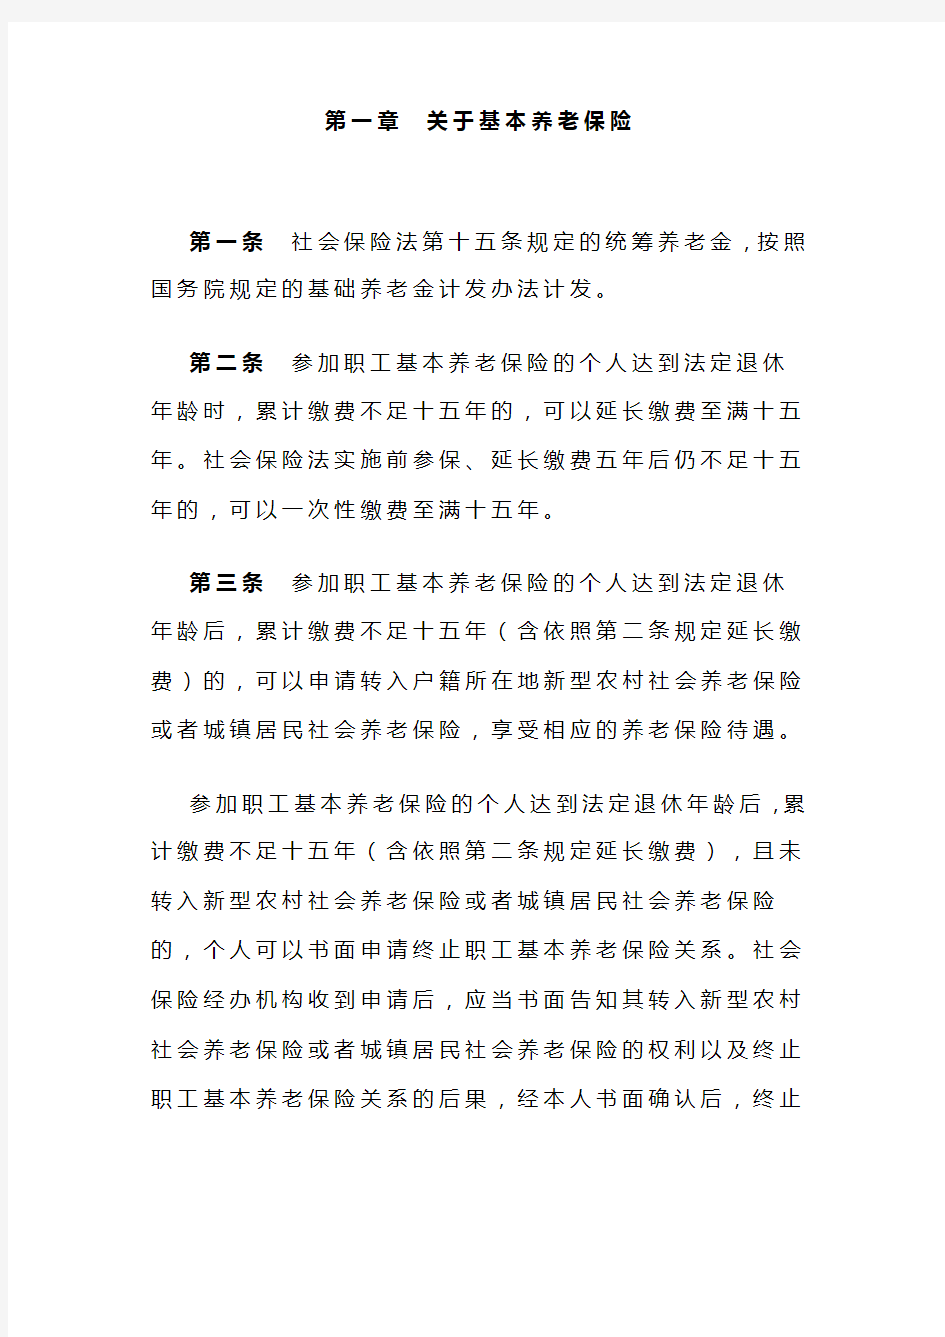 中华人民共和国人力资源和社会保障部令第13号